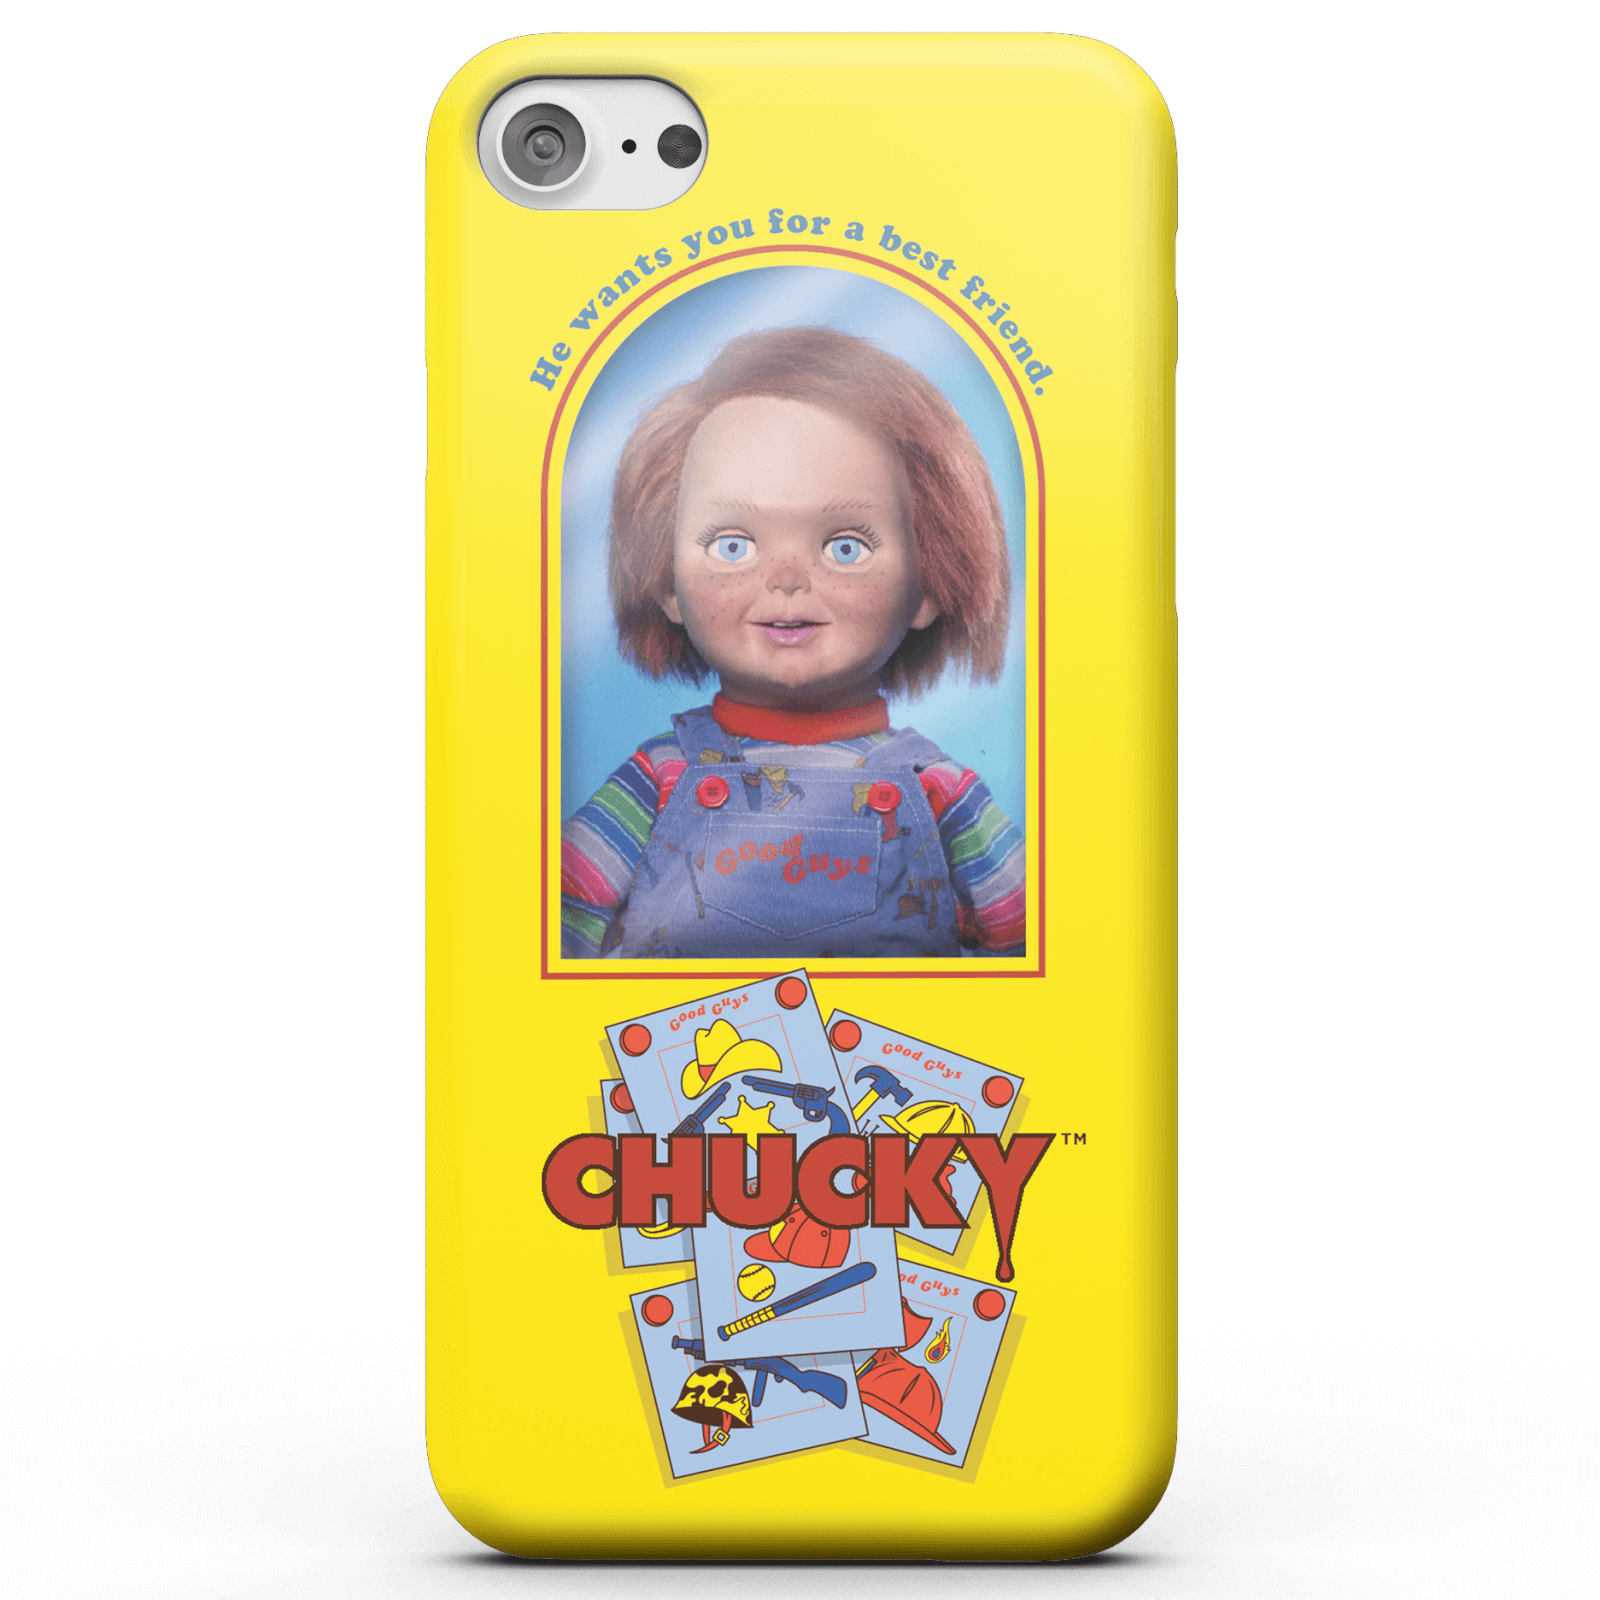 Chucky Good Guys Doll Smartphone Hülle für iPhone und Android - iPhone 6 - Tough Hülle Glänzend von Chucky